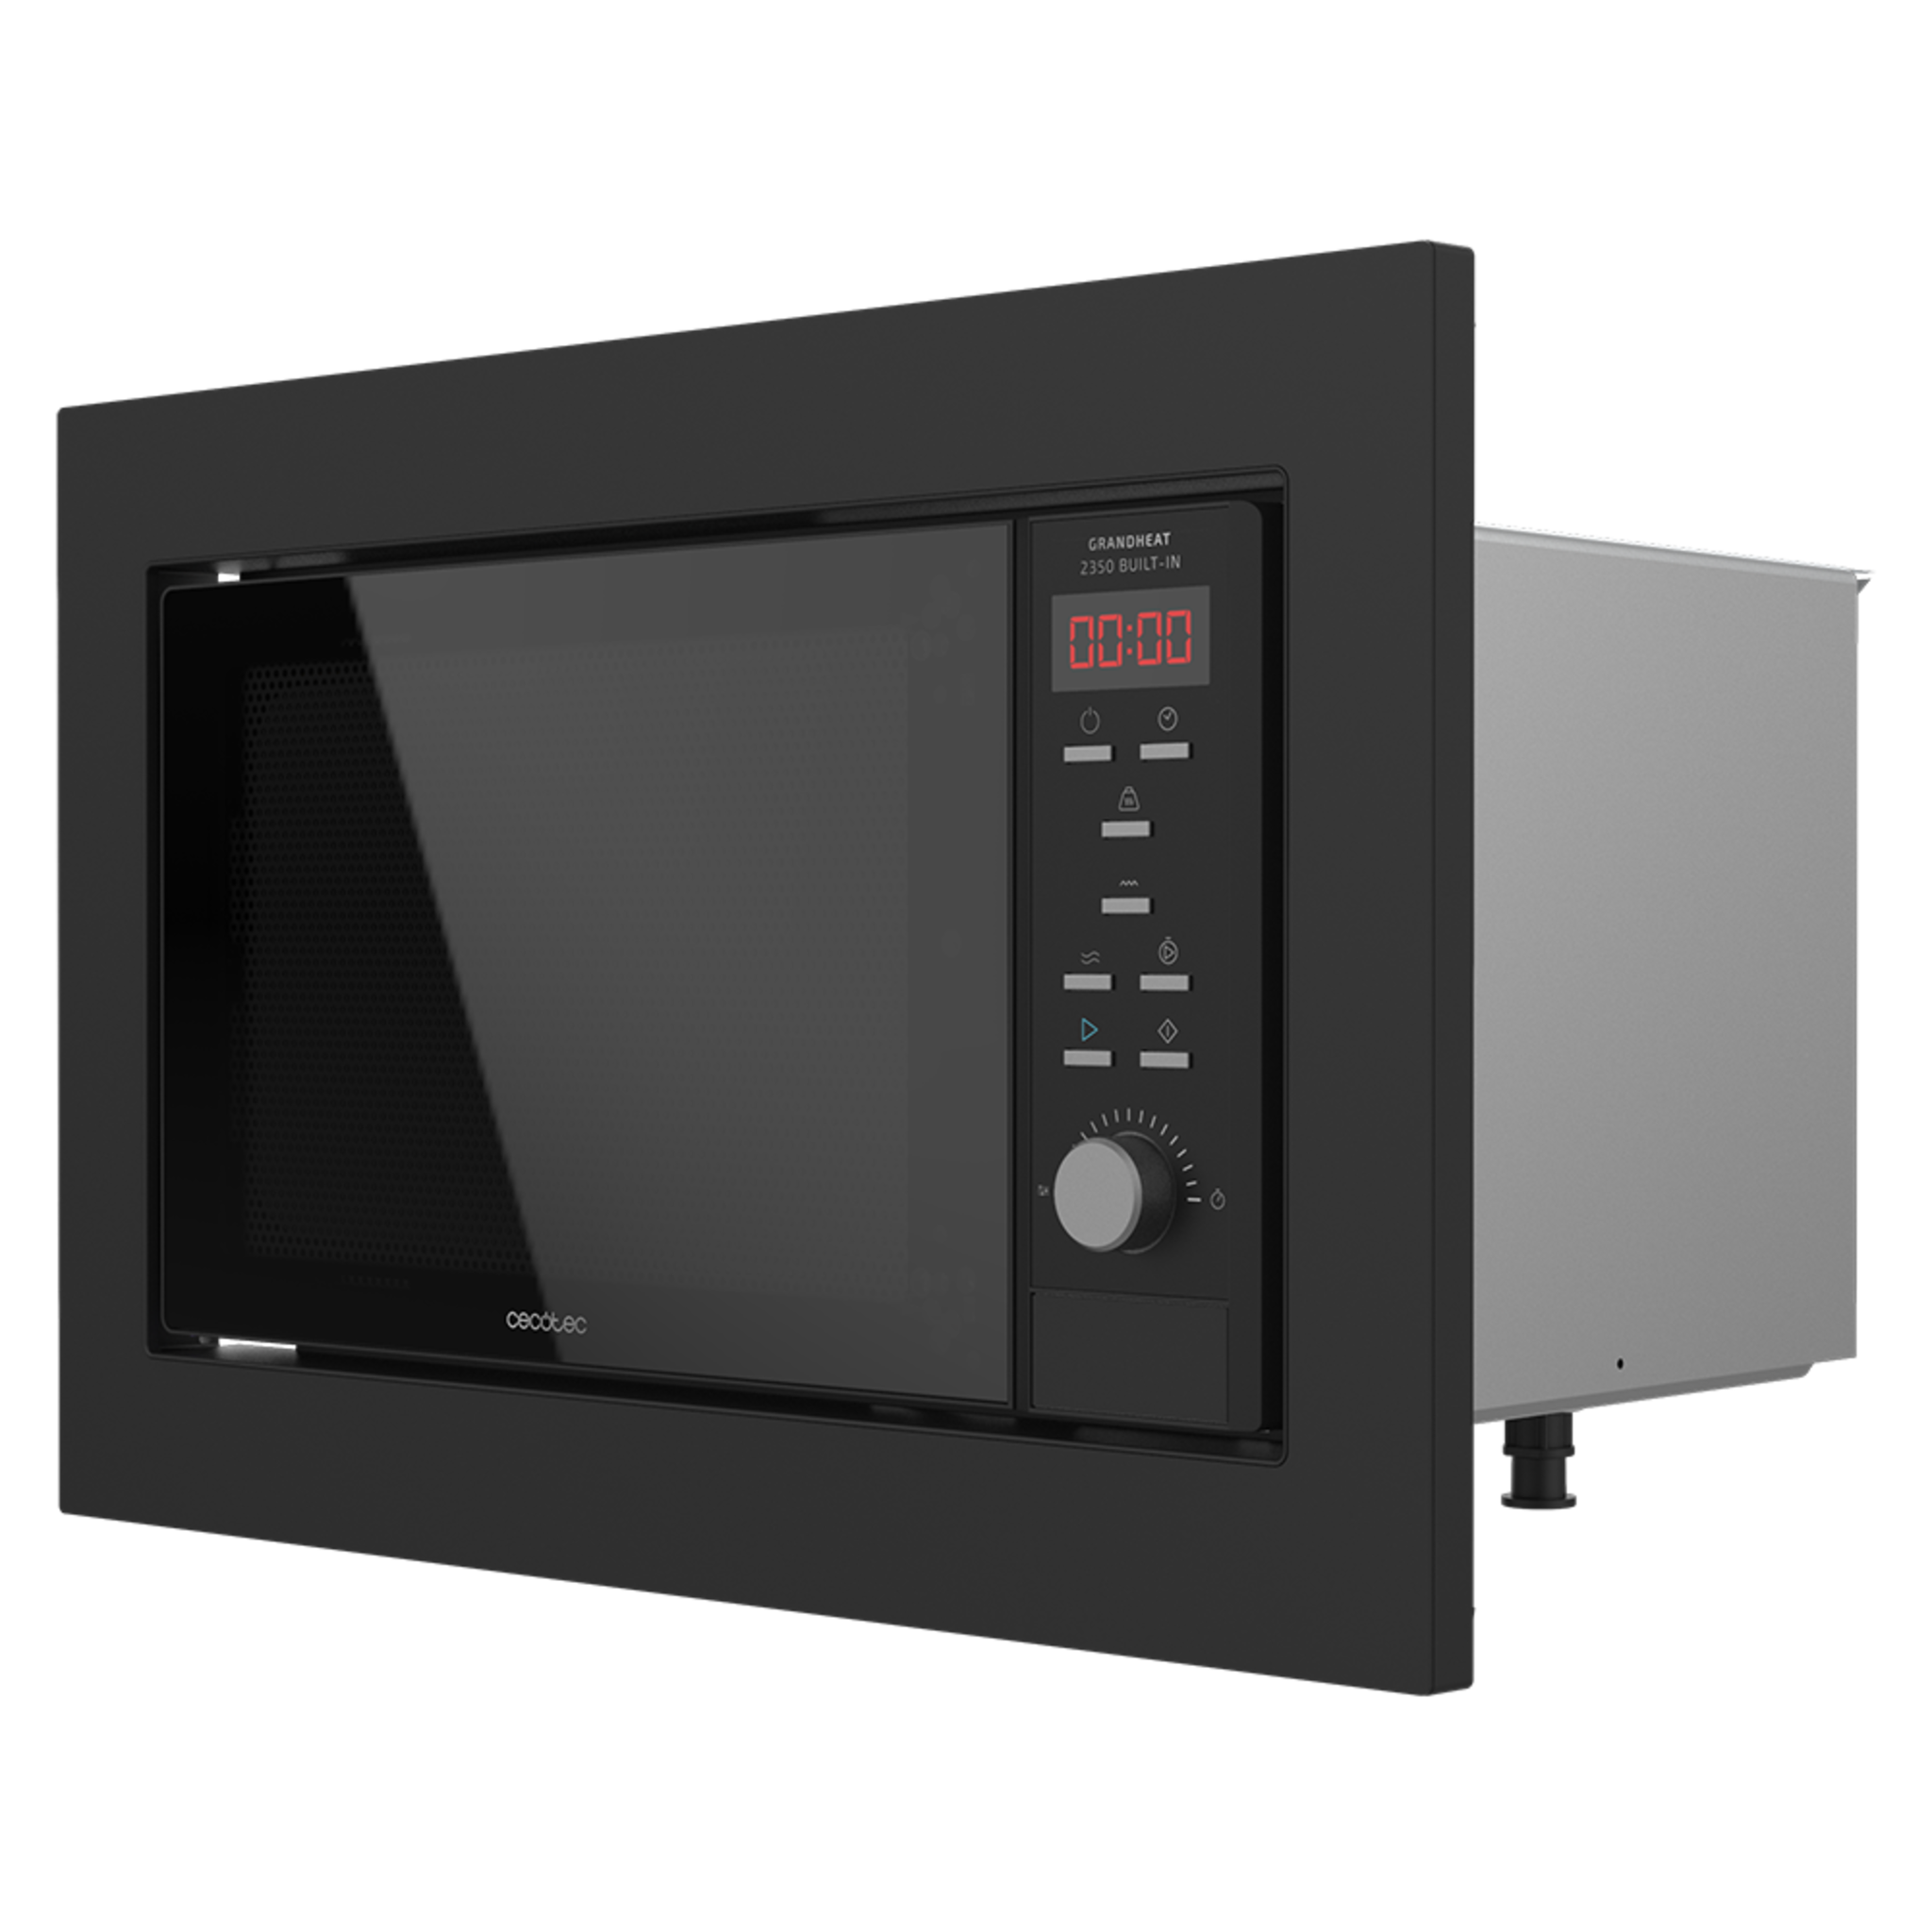 Micro-ondes encastrable numérique GrandHeat 2350 Built-In Black. 900 W, encastrable, 23 litres, gril, 9 fonctions préconfigurées, QuickStar, minuterie